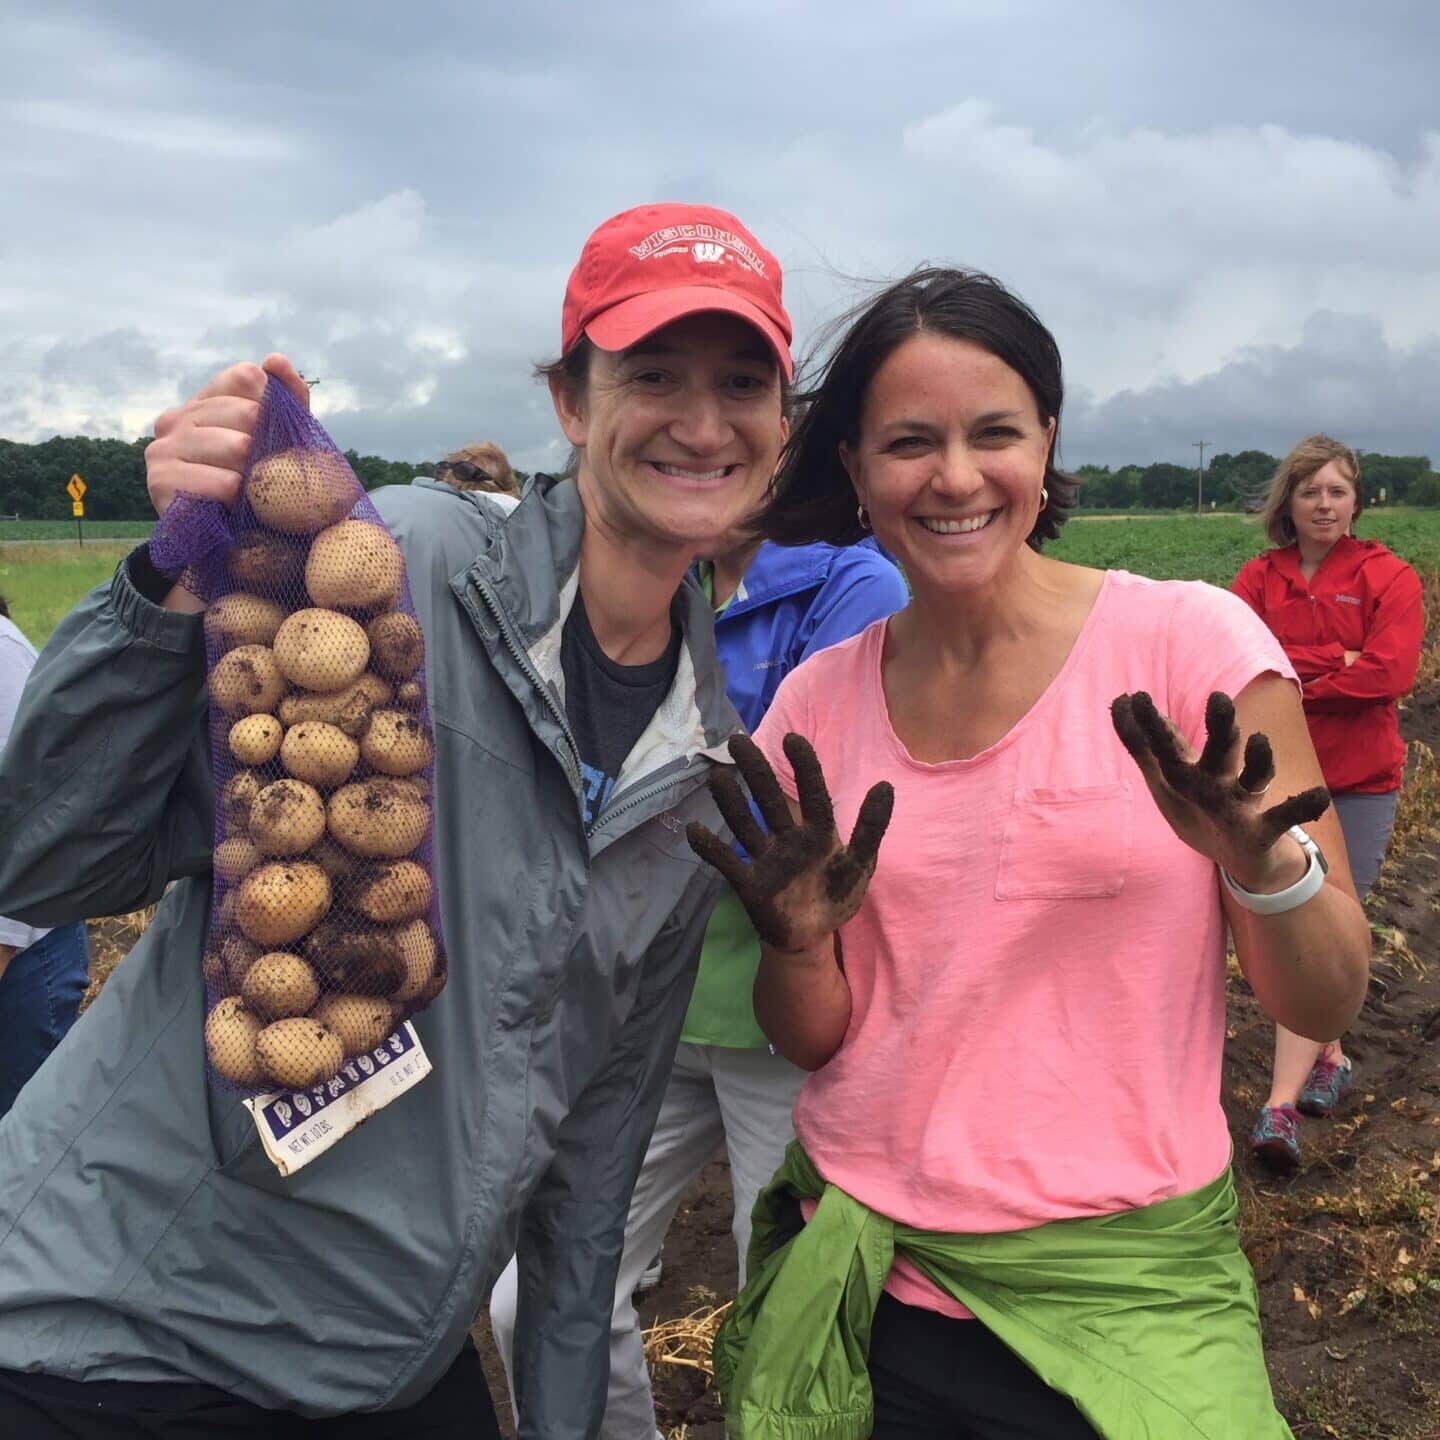 Two women holding potatoes in a field.